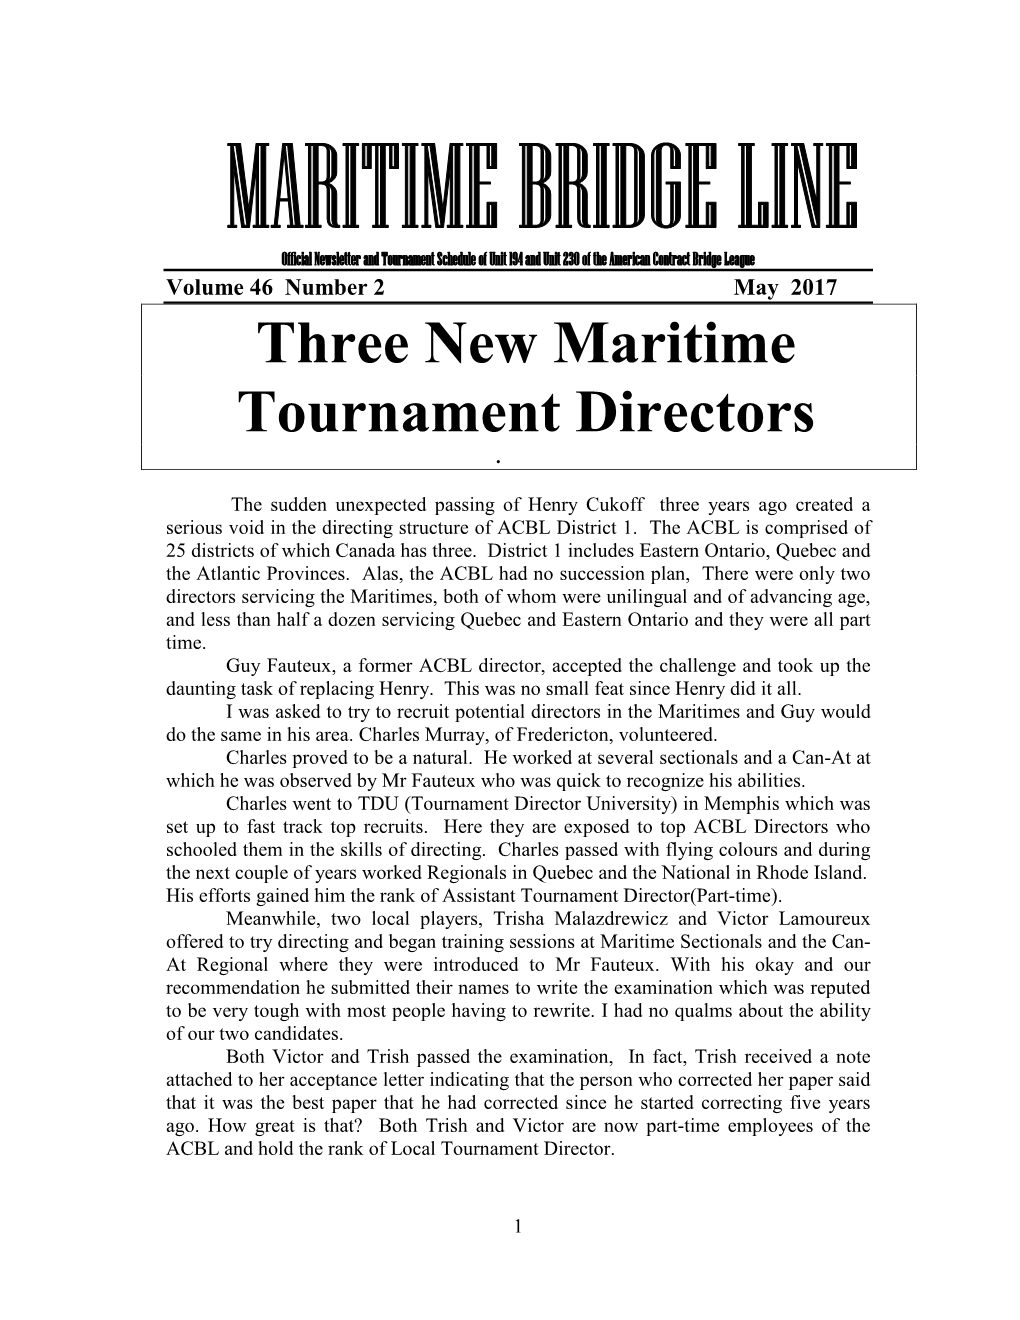 Three New Maritime Tournament Directors